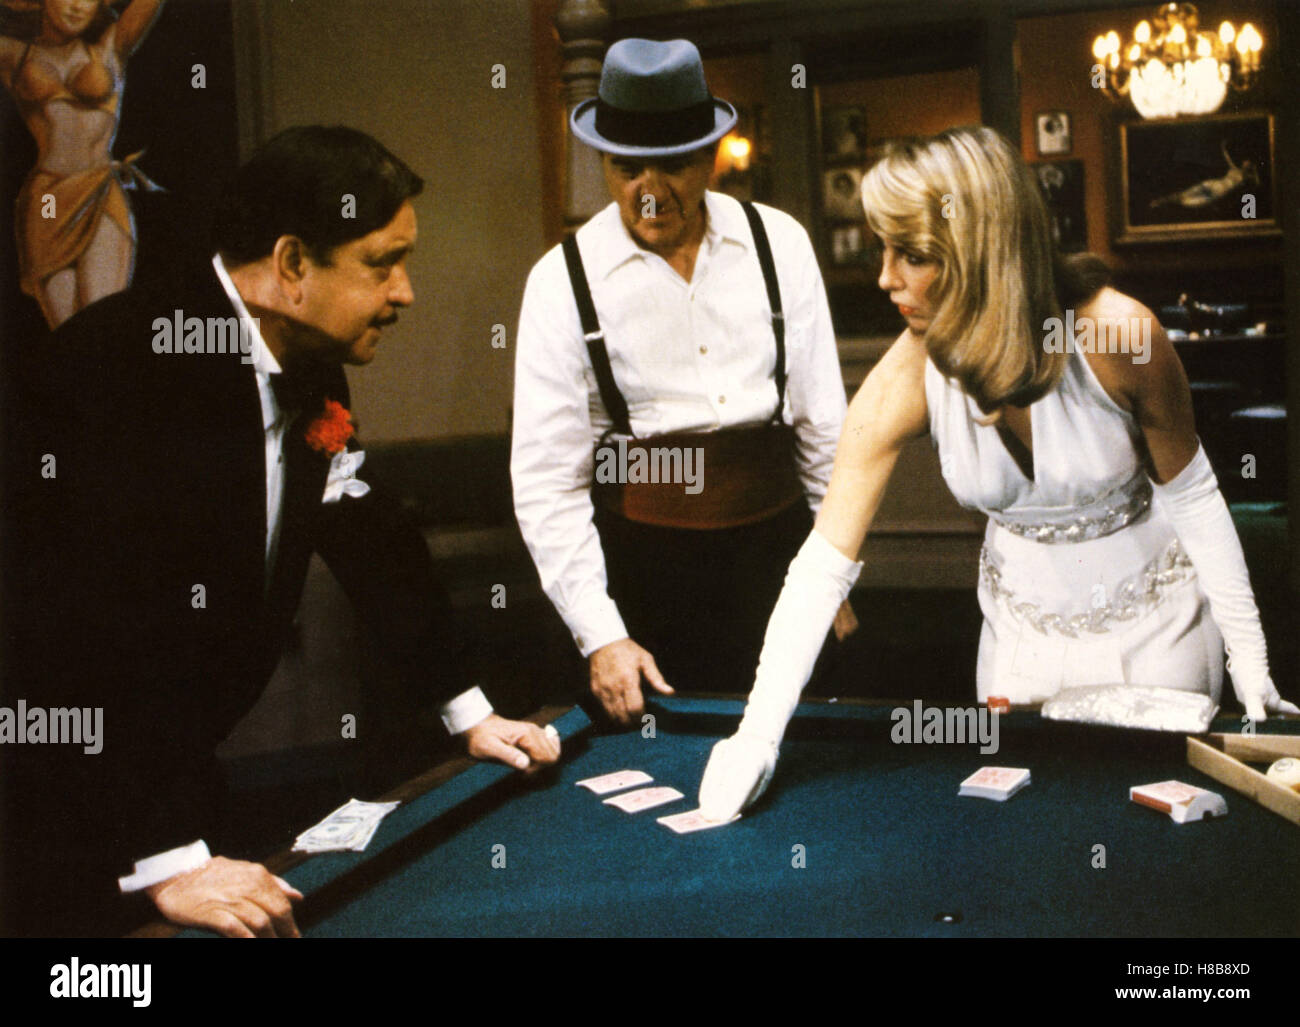 Zwei ausgekochte Gauner, (THE STING II) USA 1982, Regie: Jeremy Paul Kagan, JACKIE GLEASON, KARL MALDEN, TERI GARR, Key: Kartenspiel, Kartentrick, Spieler Stock Photo